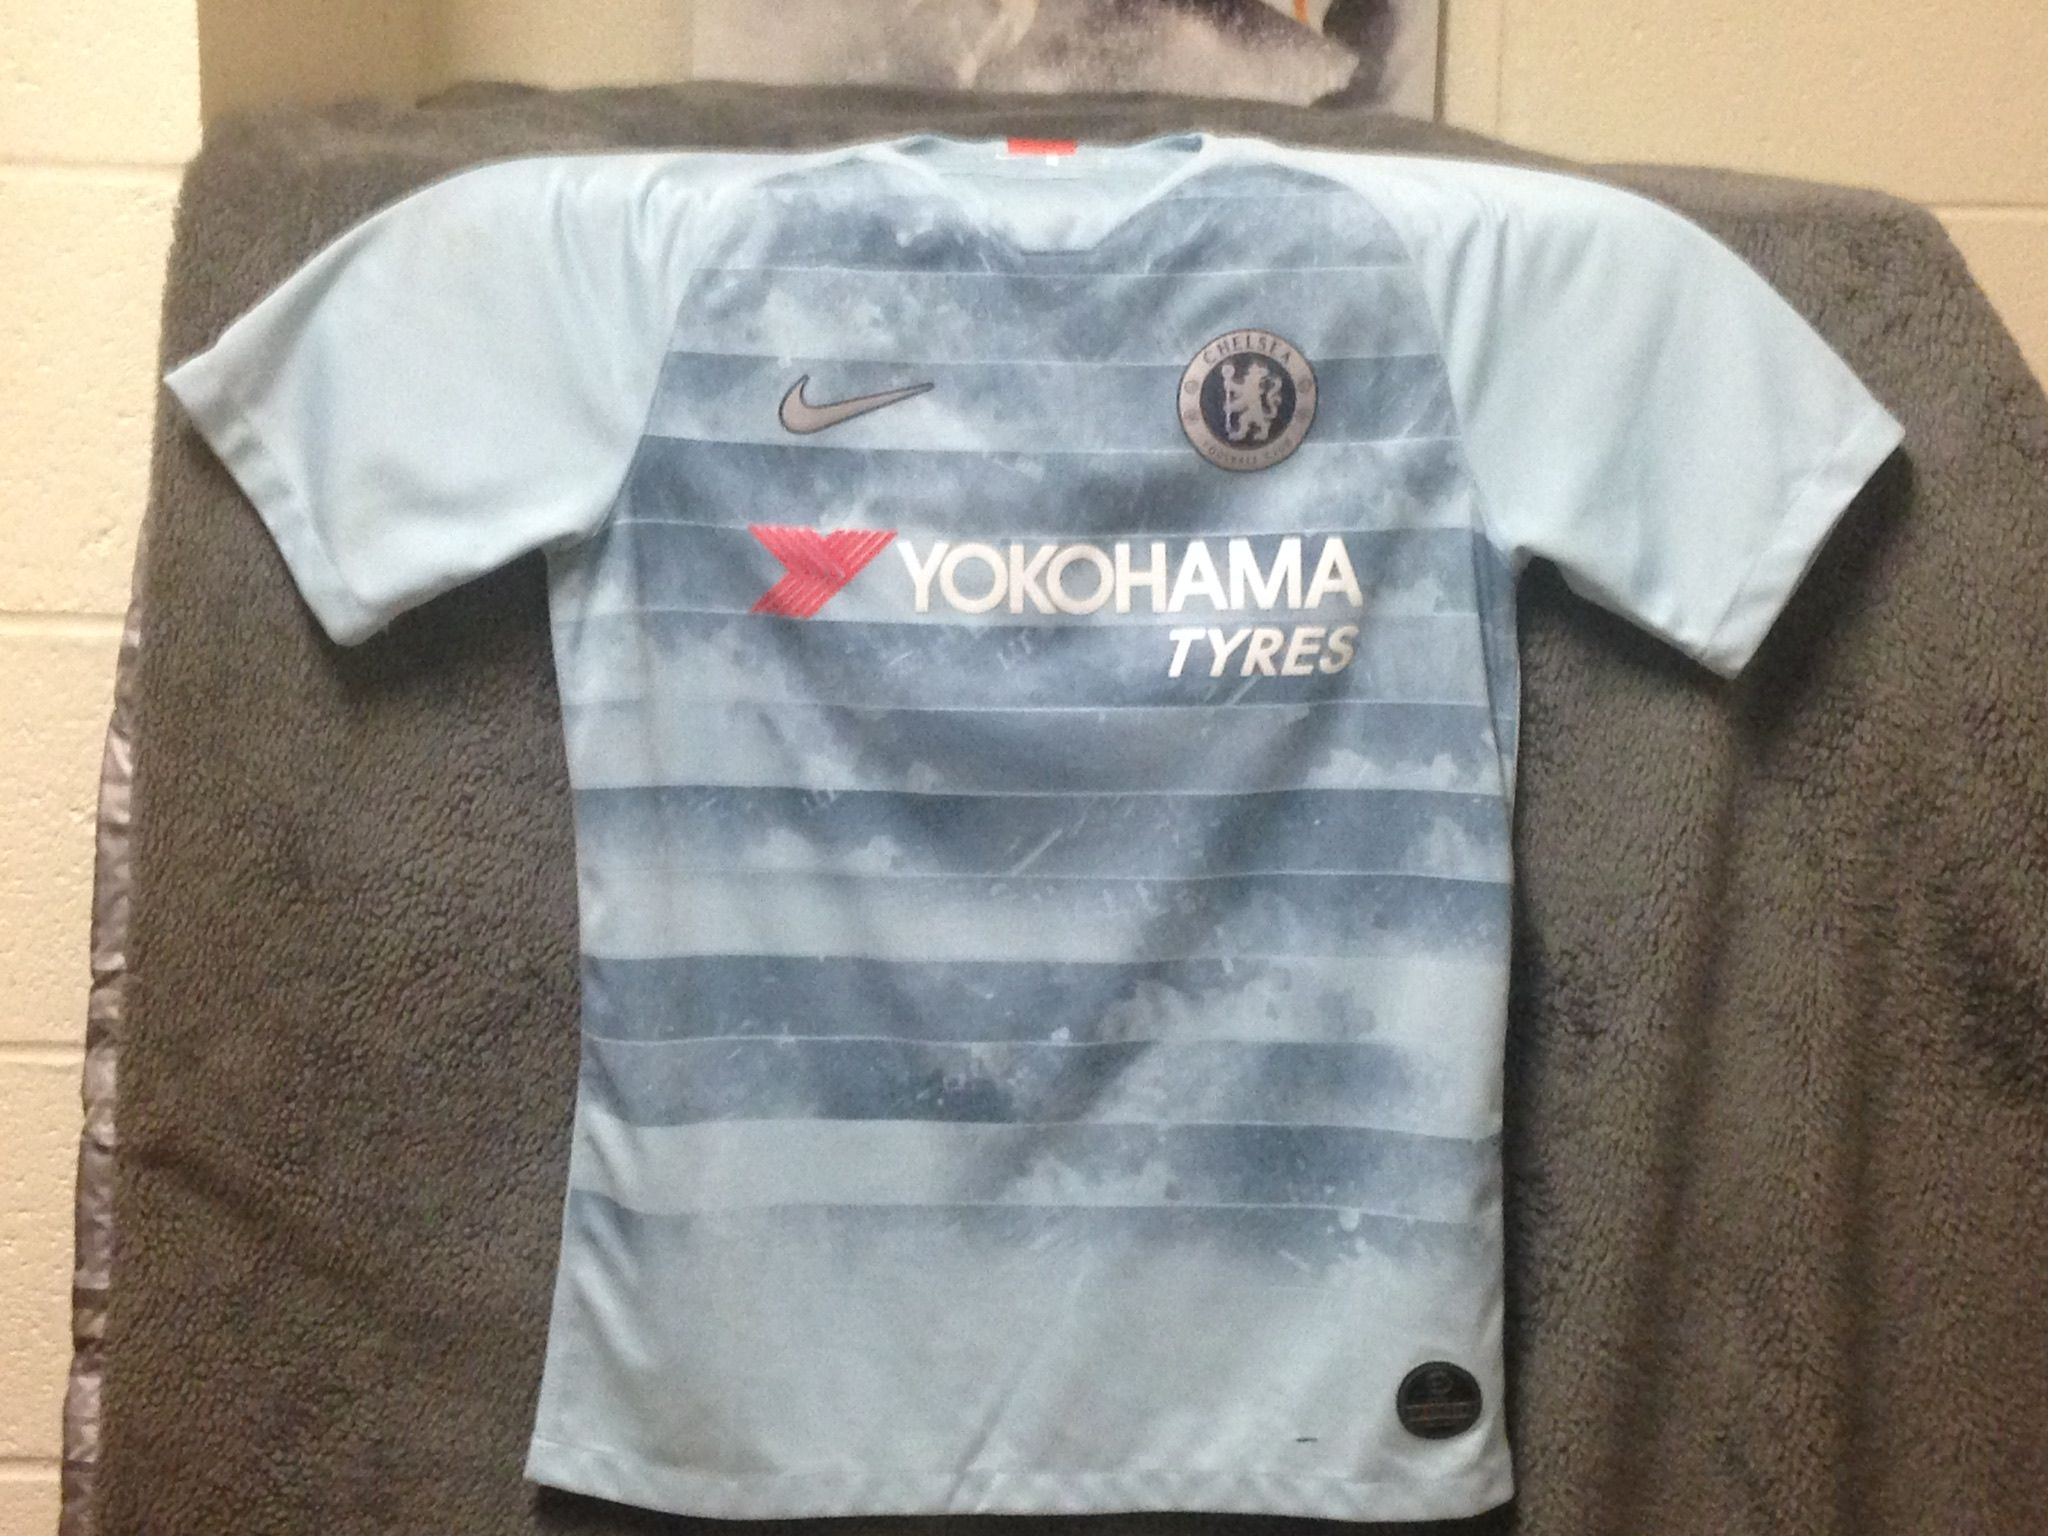 Chelsea jersey